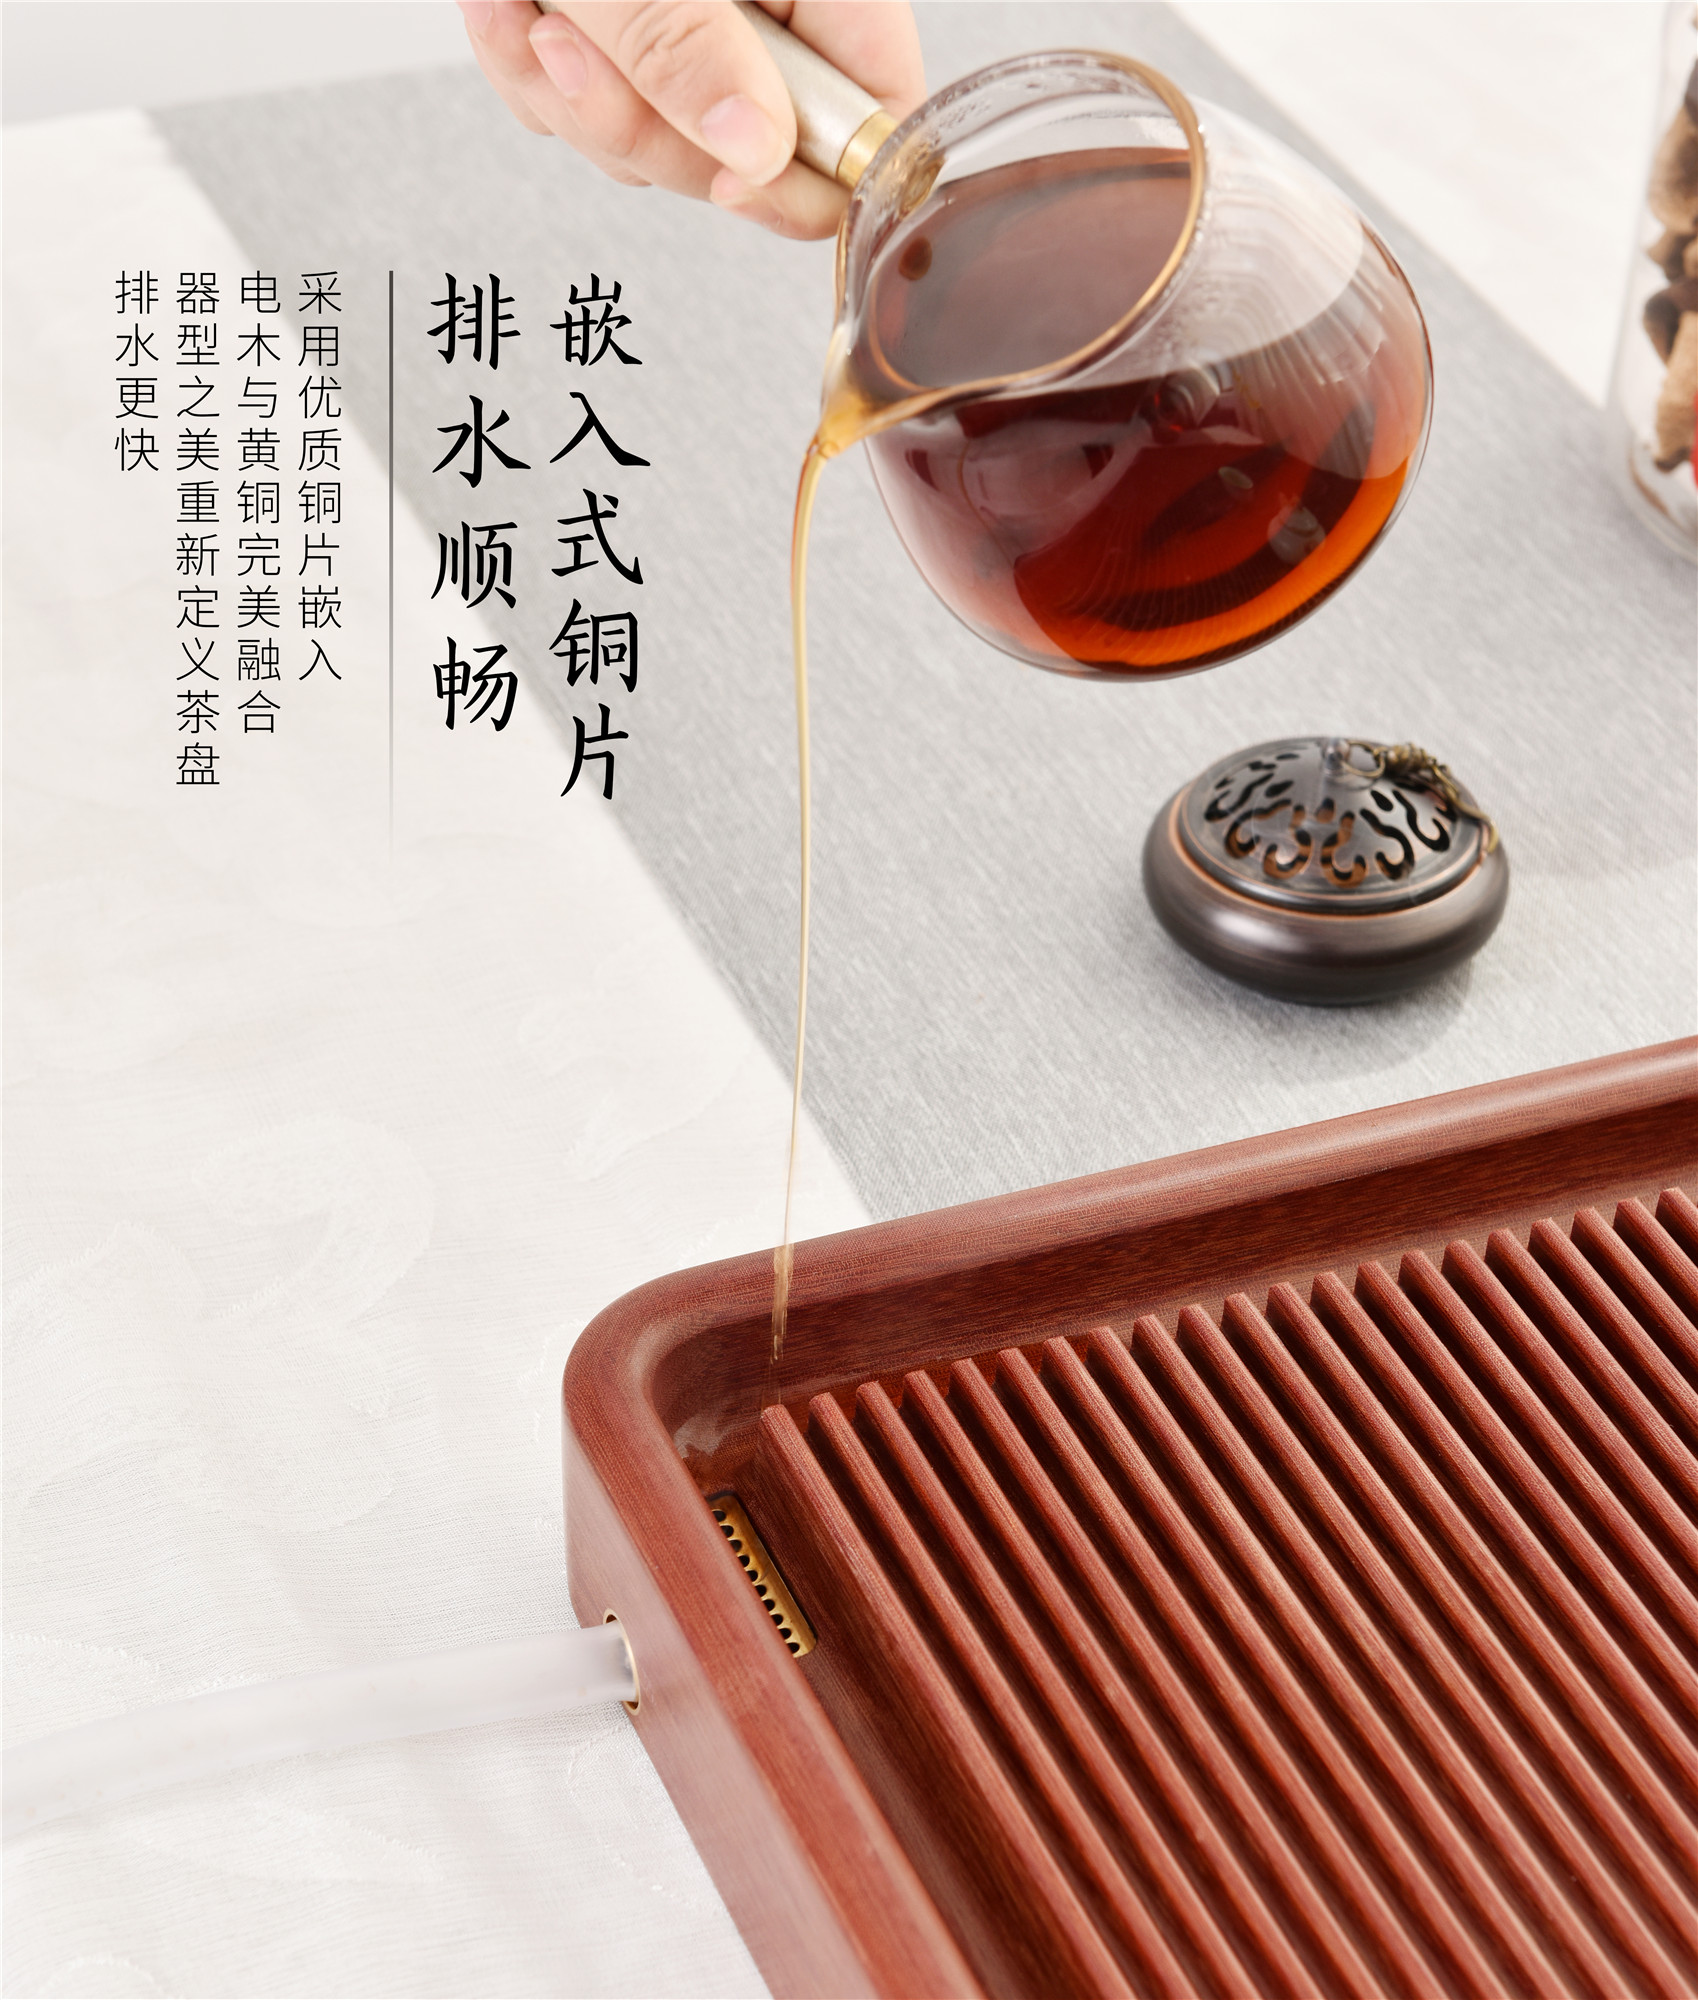 厂家直销德国电木红色茶盘高端现代家用原胚小茶台简约台湾电胶木茶具套装3